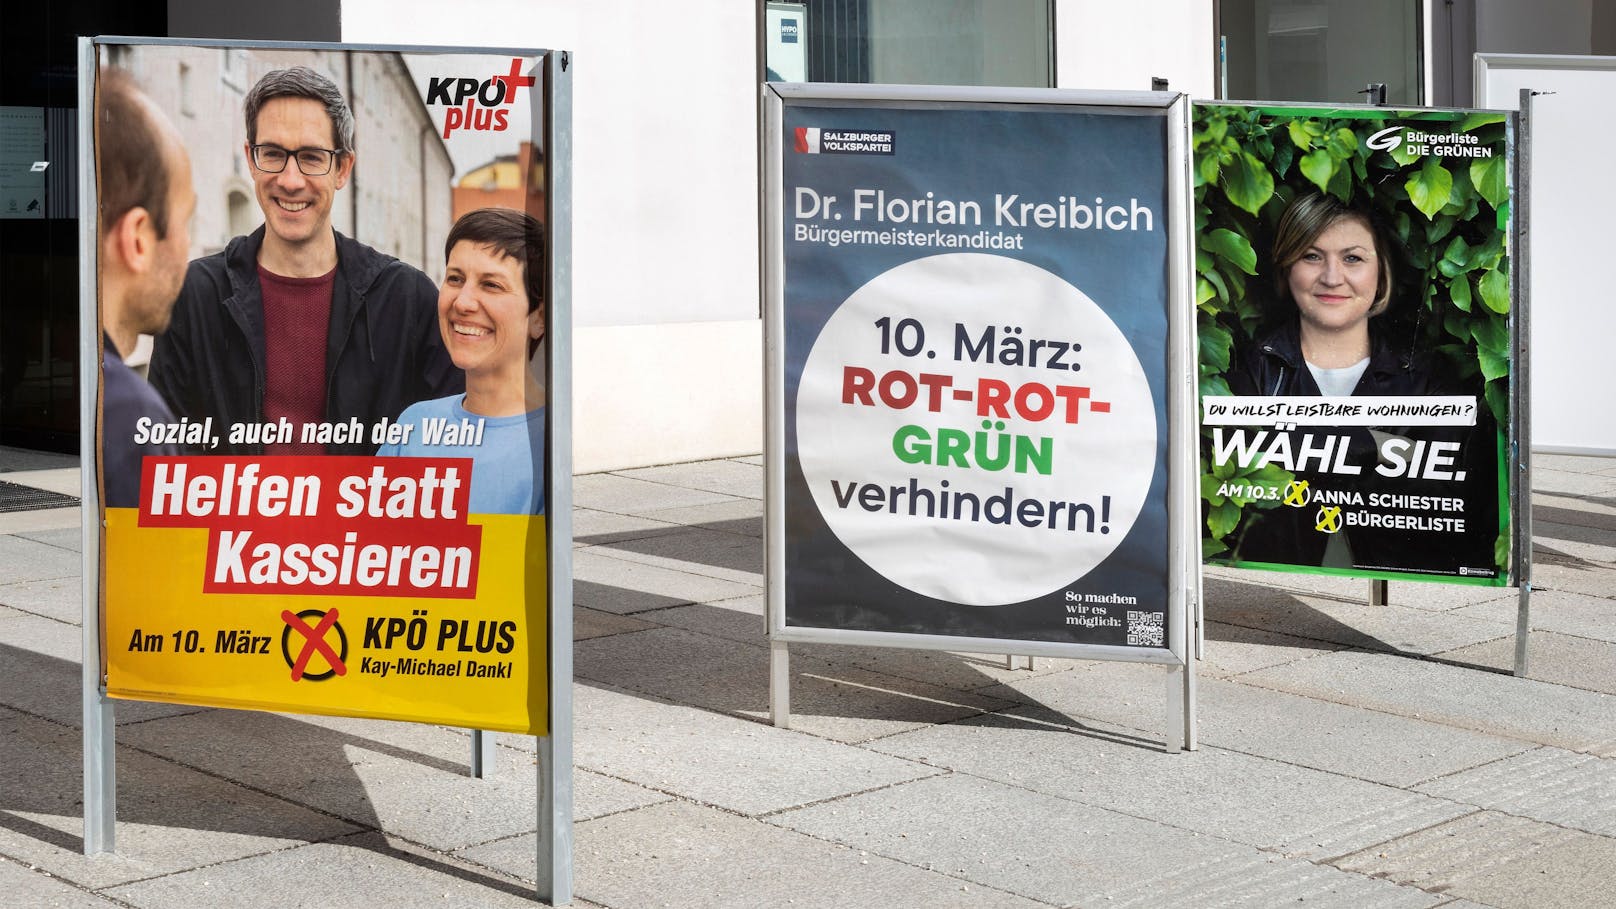 Vergangenen Sonntag konnte bei der Wahl des Salzburger Bürgermeisters keiner der Kandidaten mehr als die Hälfte der Stimmen auf sich vereinigen.